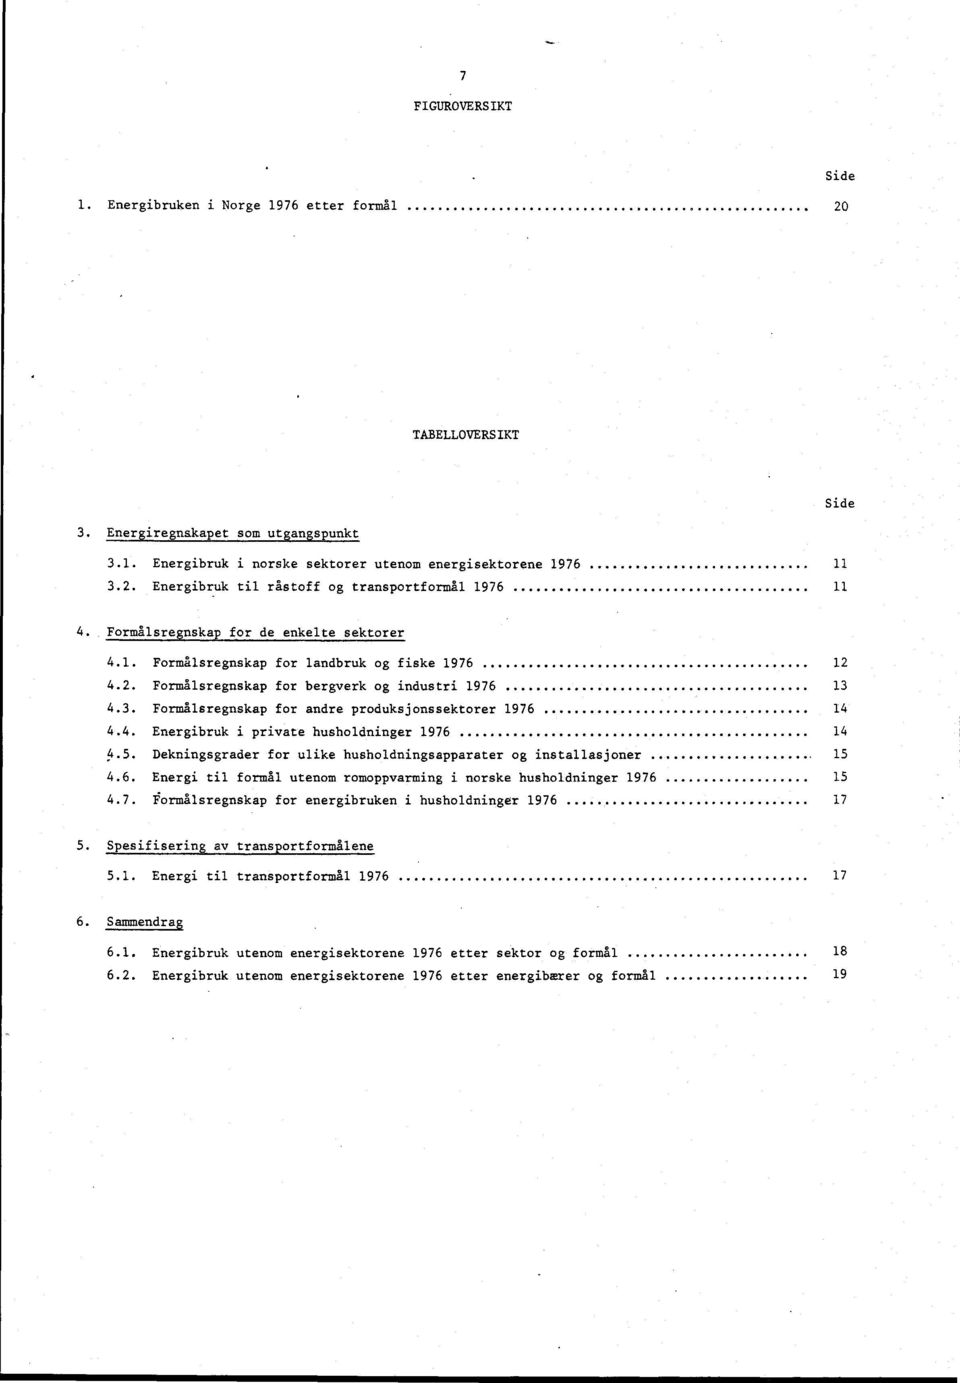 .. 14 4.4. Energibruk i private husholdninger 1976 14 4.5. Dekningsgrader for ulike husholdningsapparater og installasjoner 15 4.6. Energi til formål utenom romoppvarming i norske husholdninger 1976 15 4.